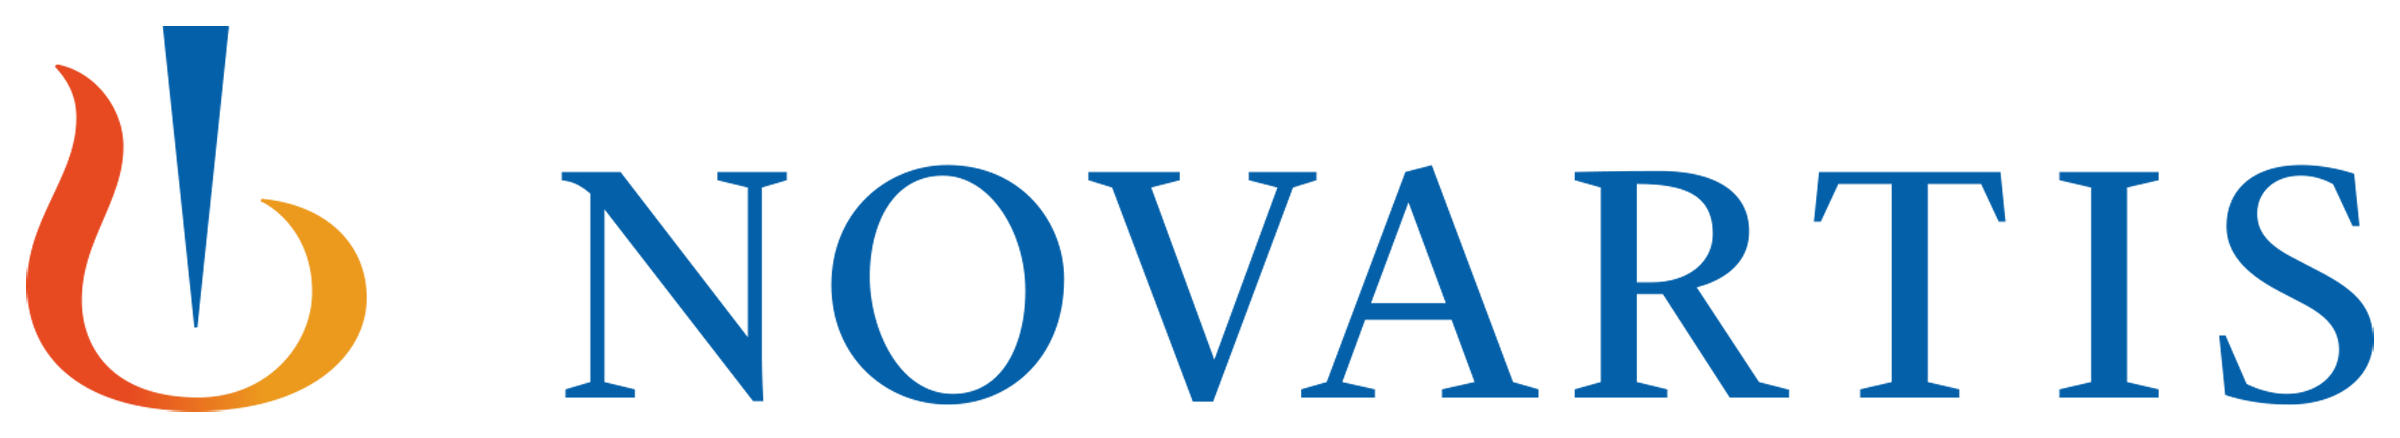 novartis-logo-transparent-300dpi